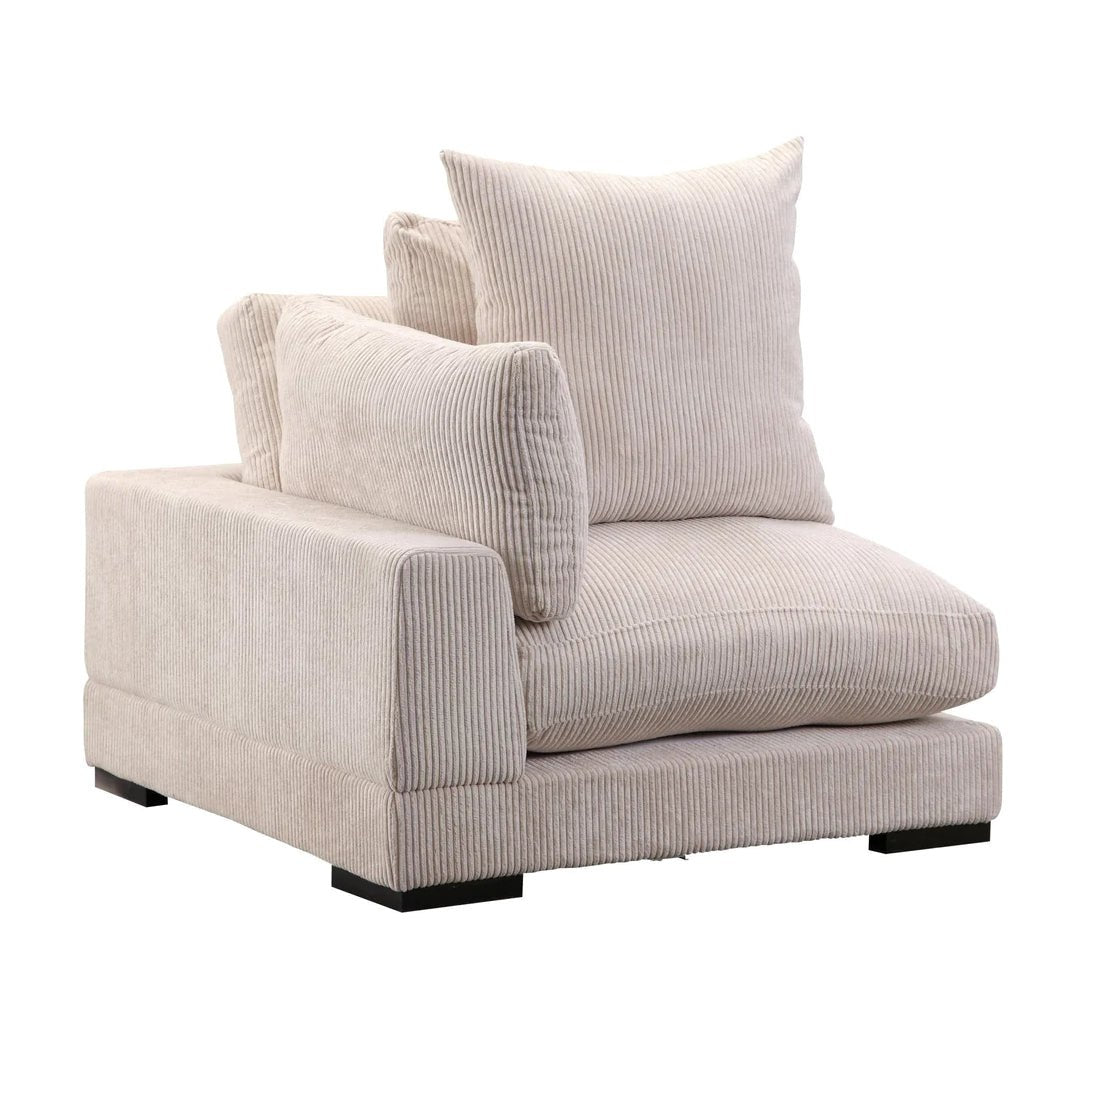 ‘Tumble’ Corner Chair (Cappuccino) - EcoLuxe Furnishings